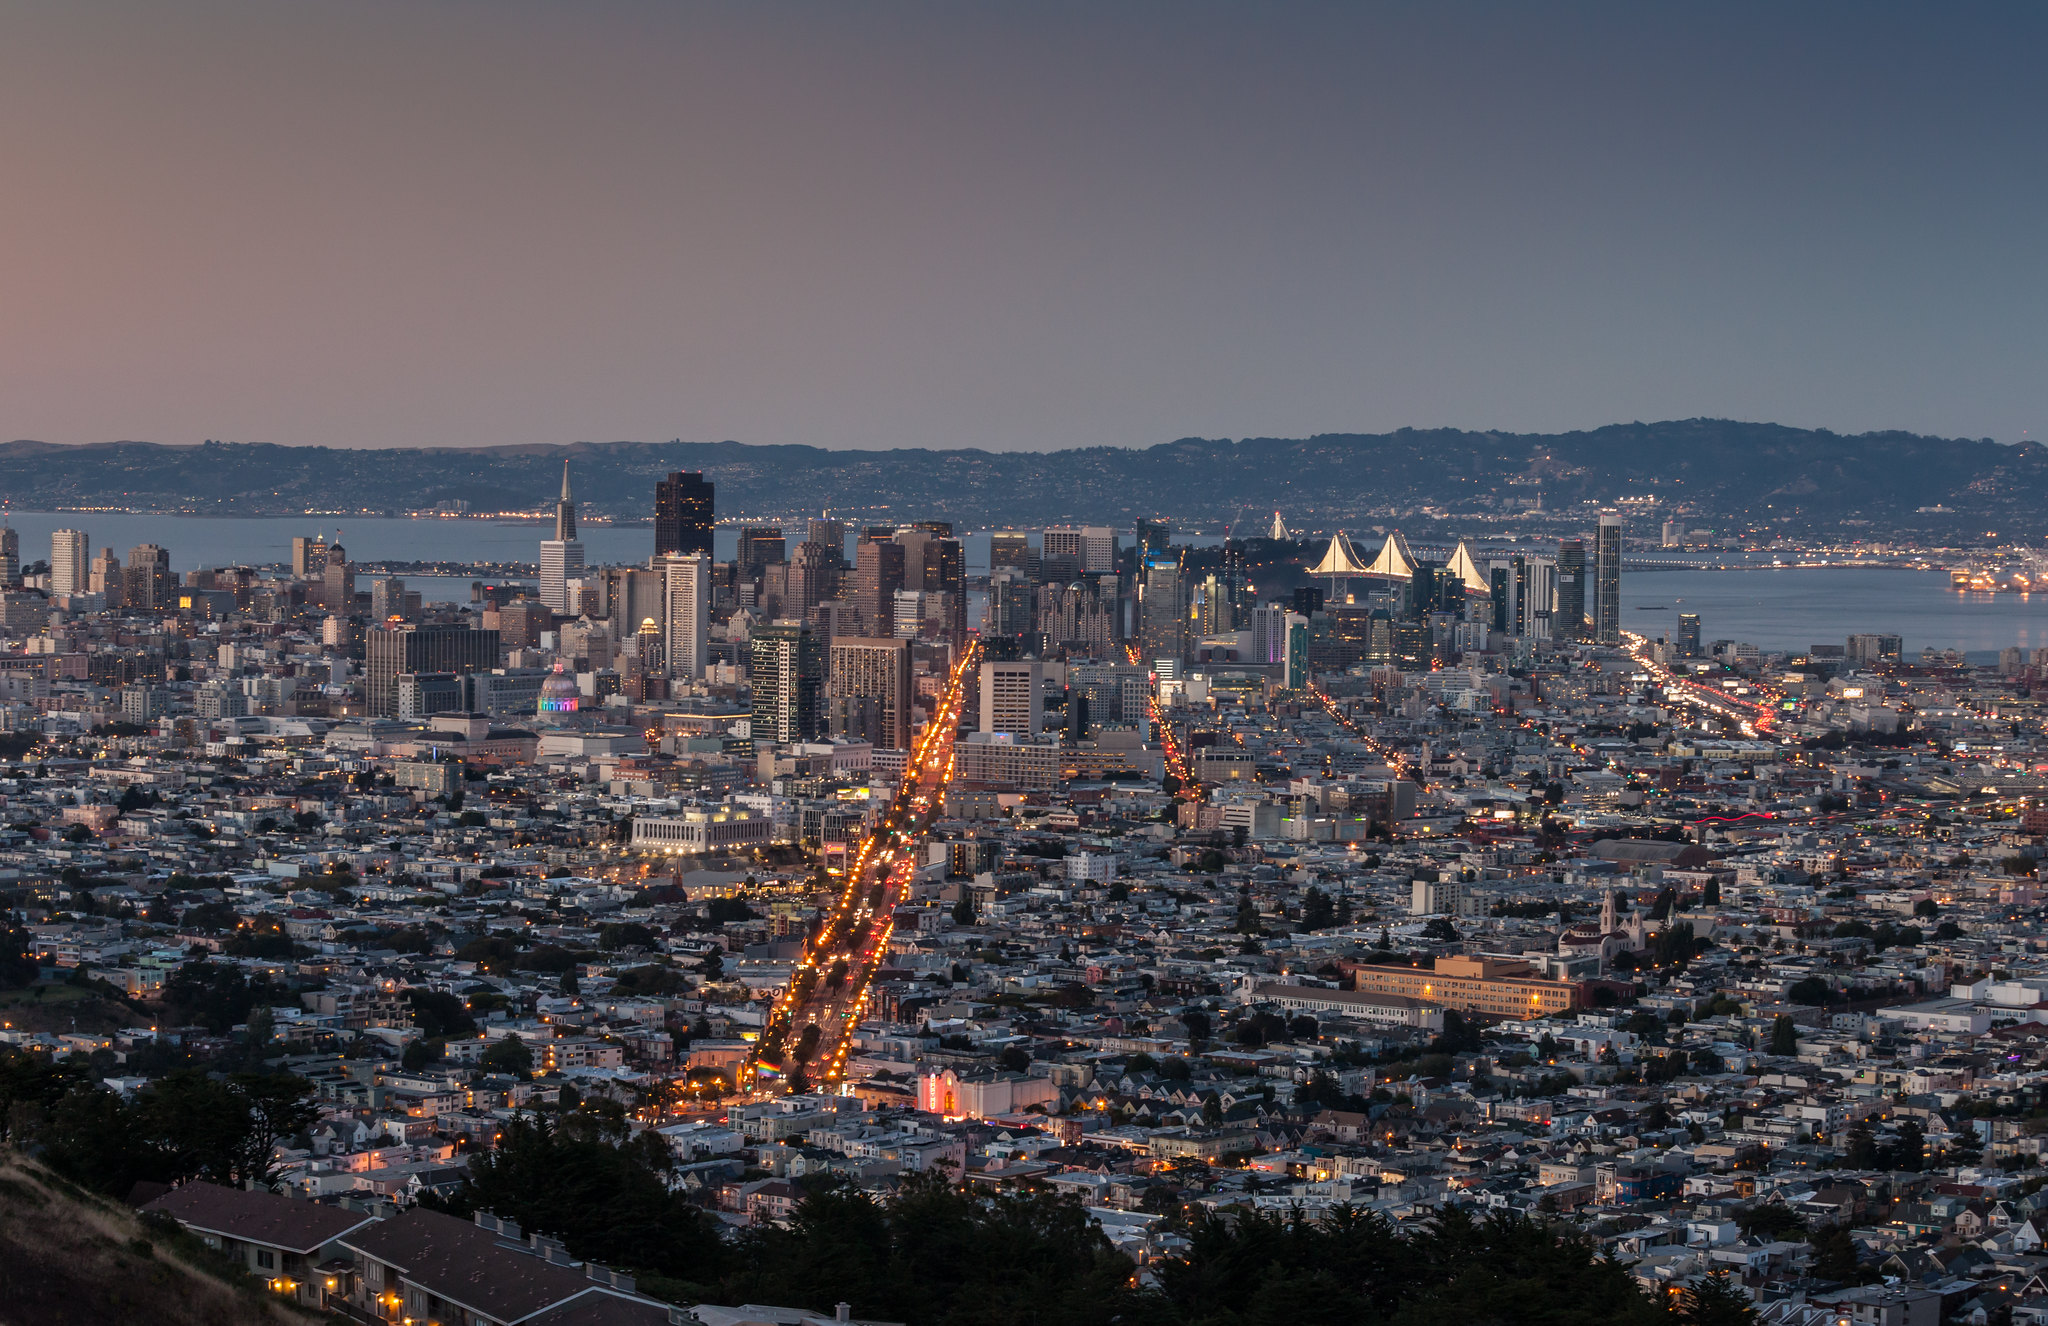 Сан-Франциско и Bay Area - если вы приехали за фотографиями